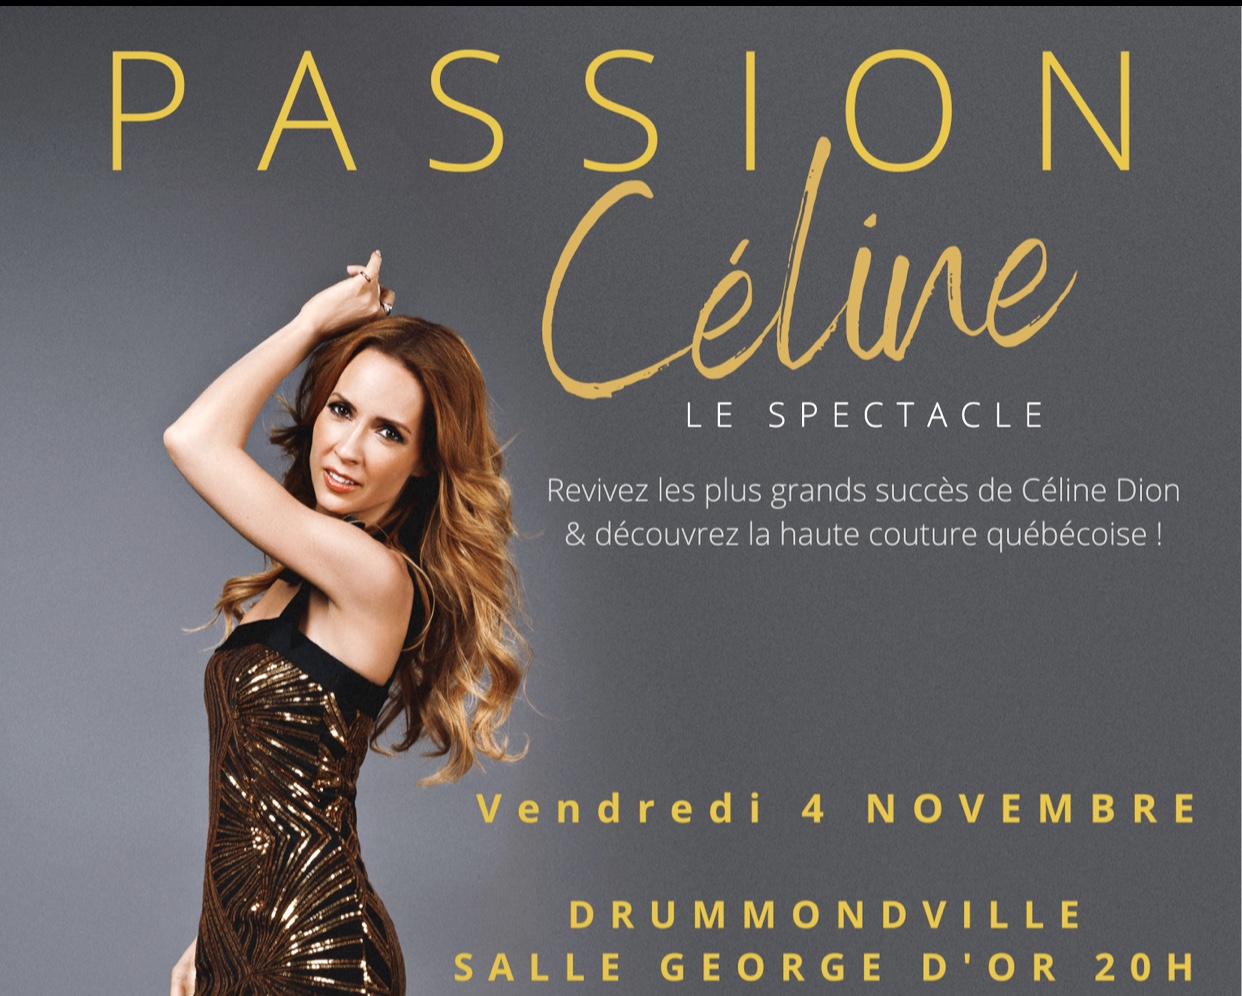 Une affiche pour Passion Céline, mettant en scène une femme vêtue d'une robe dorée mettant en valeur sa passion et son élégance.